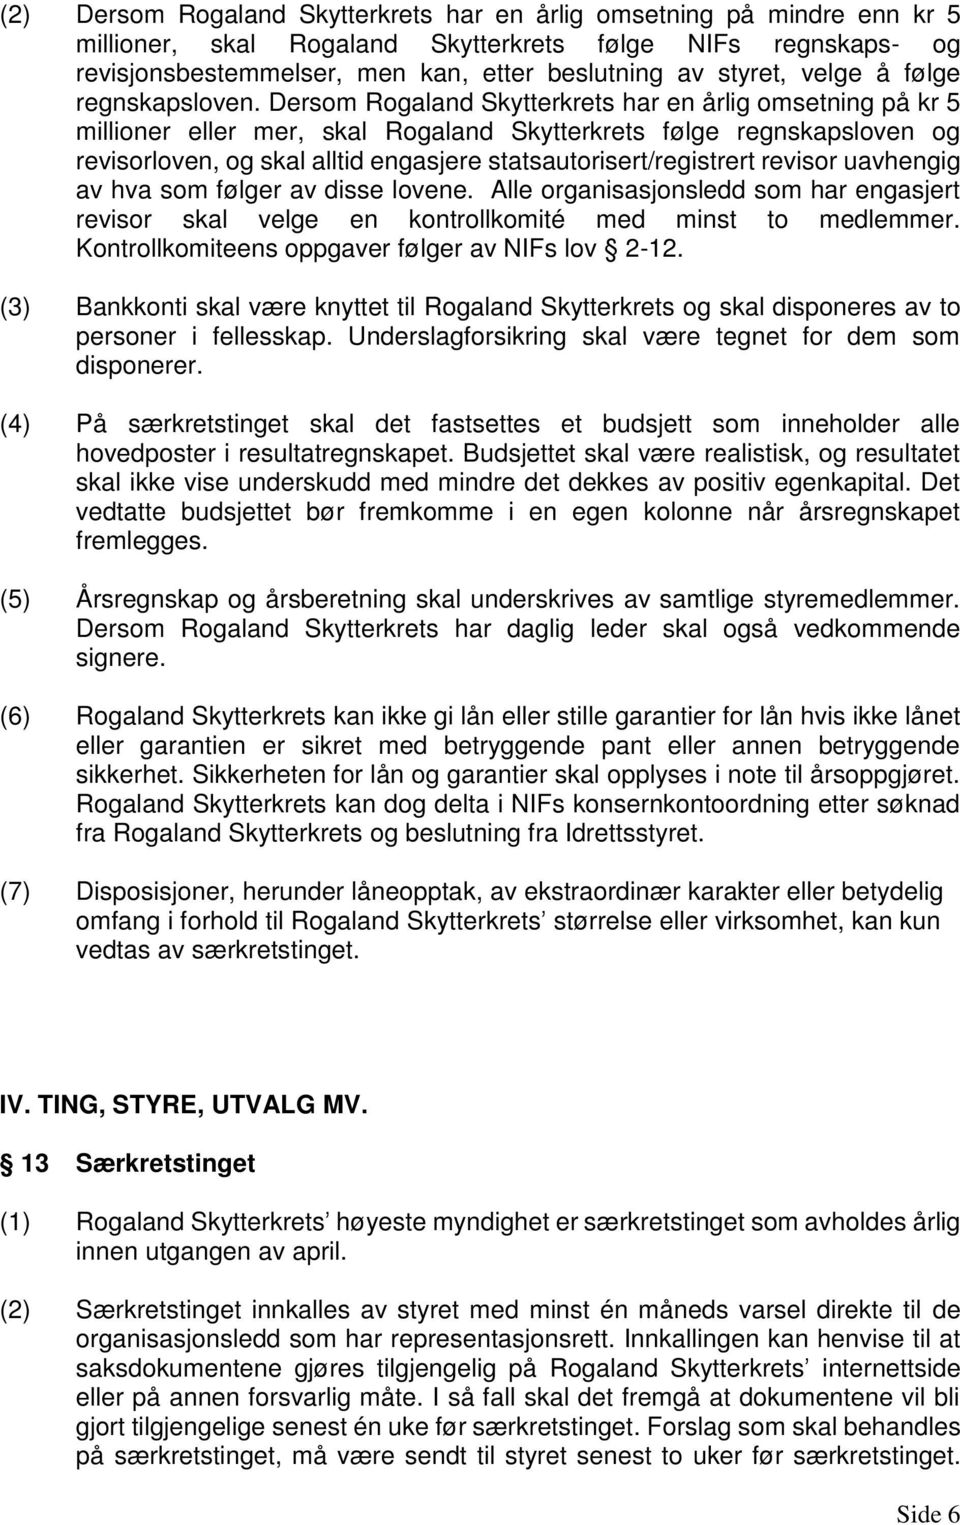 Dersom Rogaland Skytterkrets har en årlig omsetning på kr 5 millioner eller mer, skal Rogaland Skytterkrets følge regnskapsloven og revisorloven, og skal alltid engasjere statsautorisert/registrert